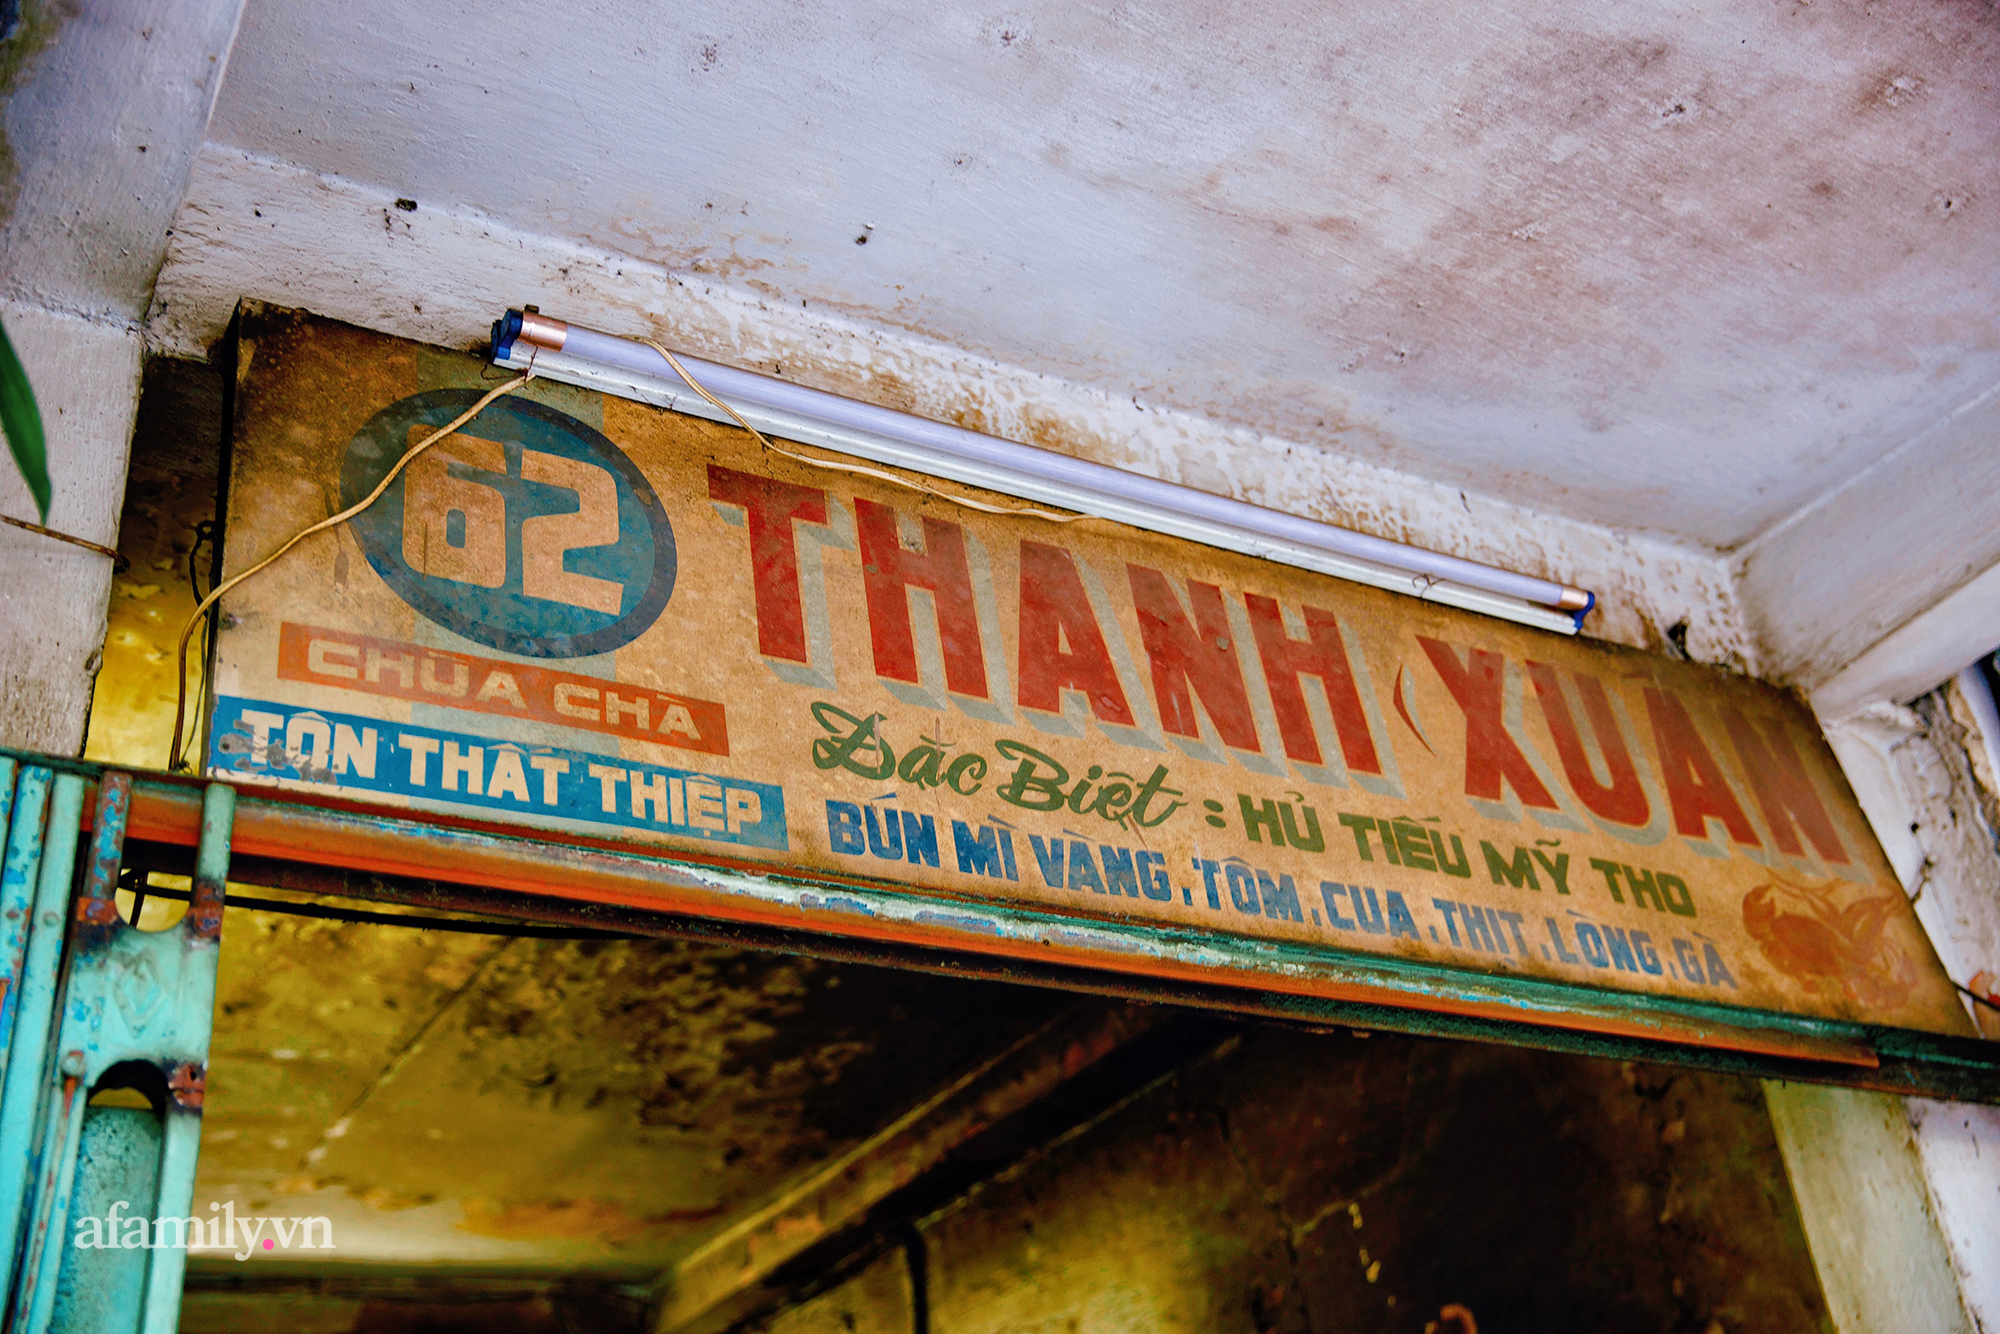 Tiệm hủ tiếu níu kéo "Thanh Xuân" hơn 70 năm của người Sài Gòn, nổi tiếng với nồi sốt cà chua hầm 3 đời và sở hữu tấm bảng hiệu được "định giá" nghìn đô! - Ảnh 6.